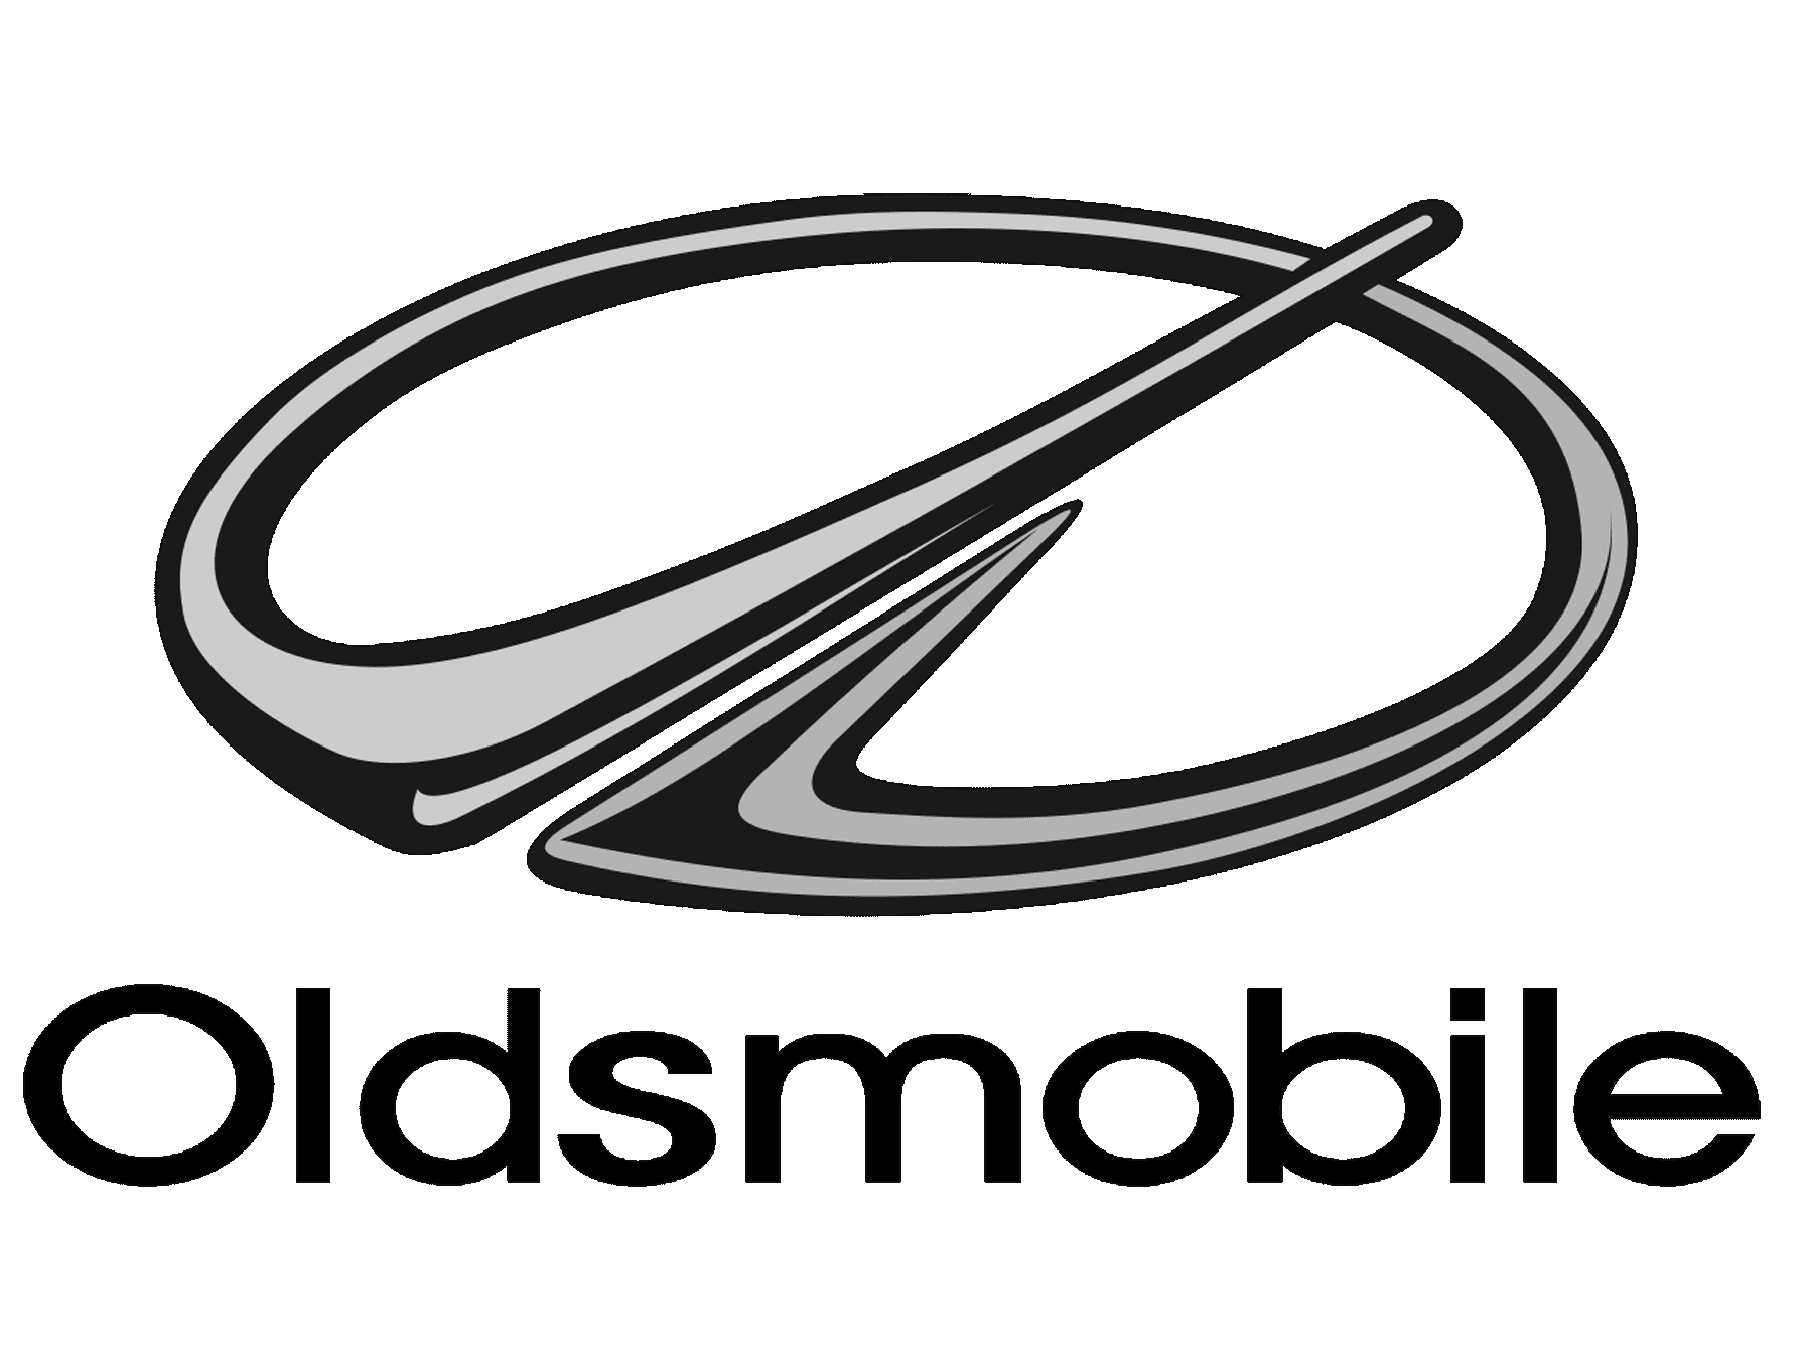 Oldsmobile symbol